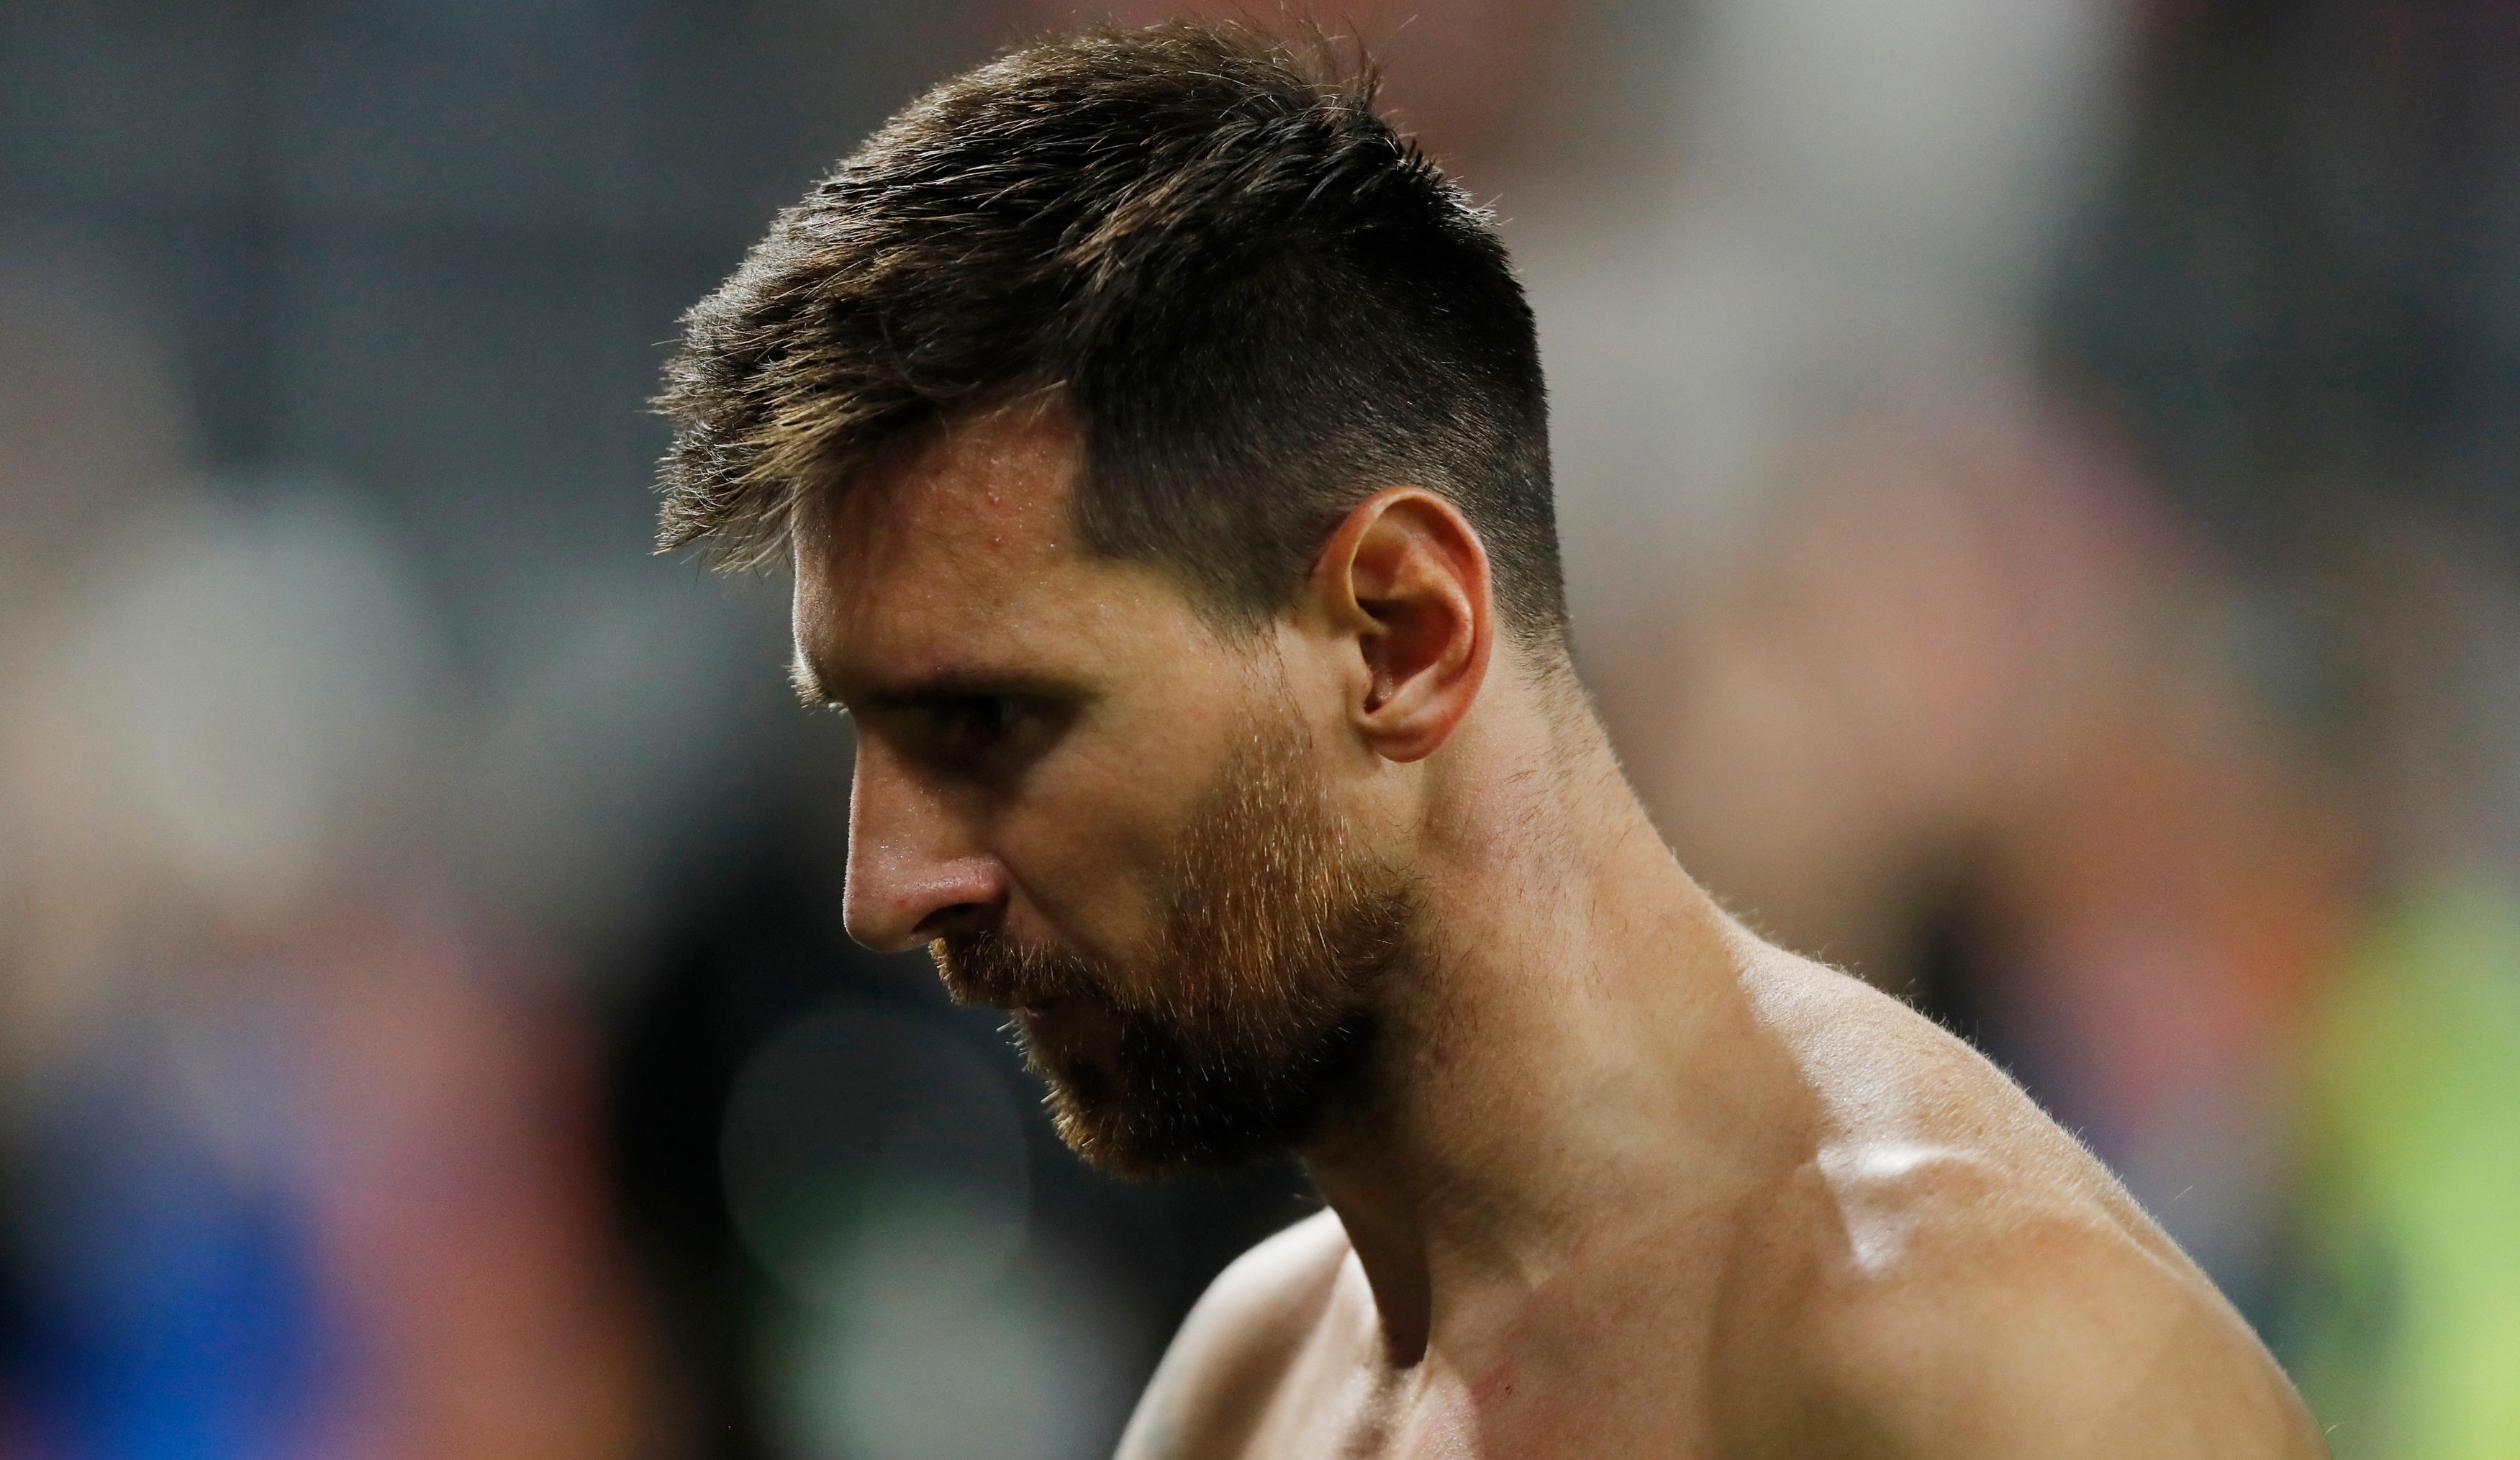 Leo Messi a primit replica, după cel mai recent interviu: Pentru ce vrei să fii onorat? Hai să fim serioși!